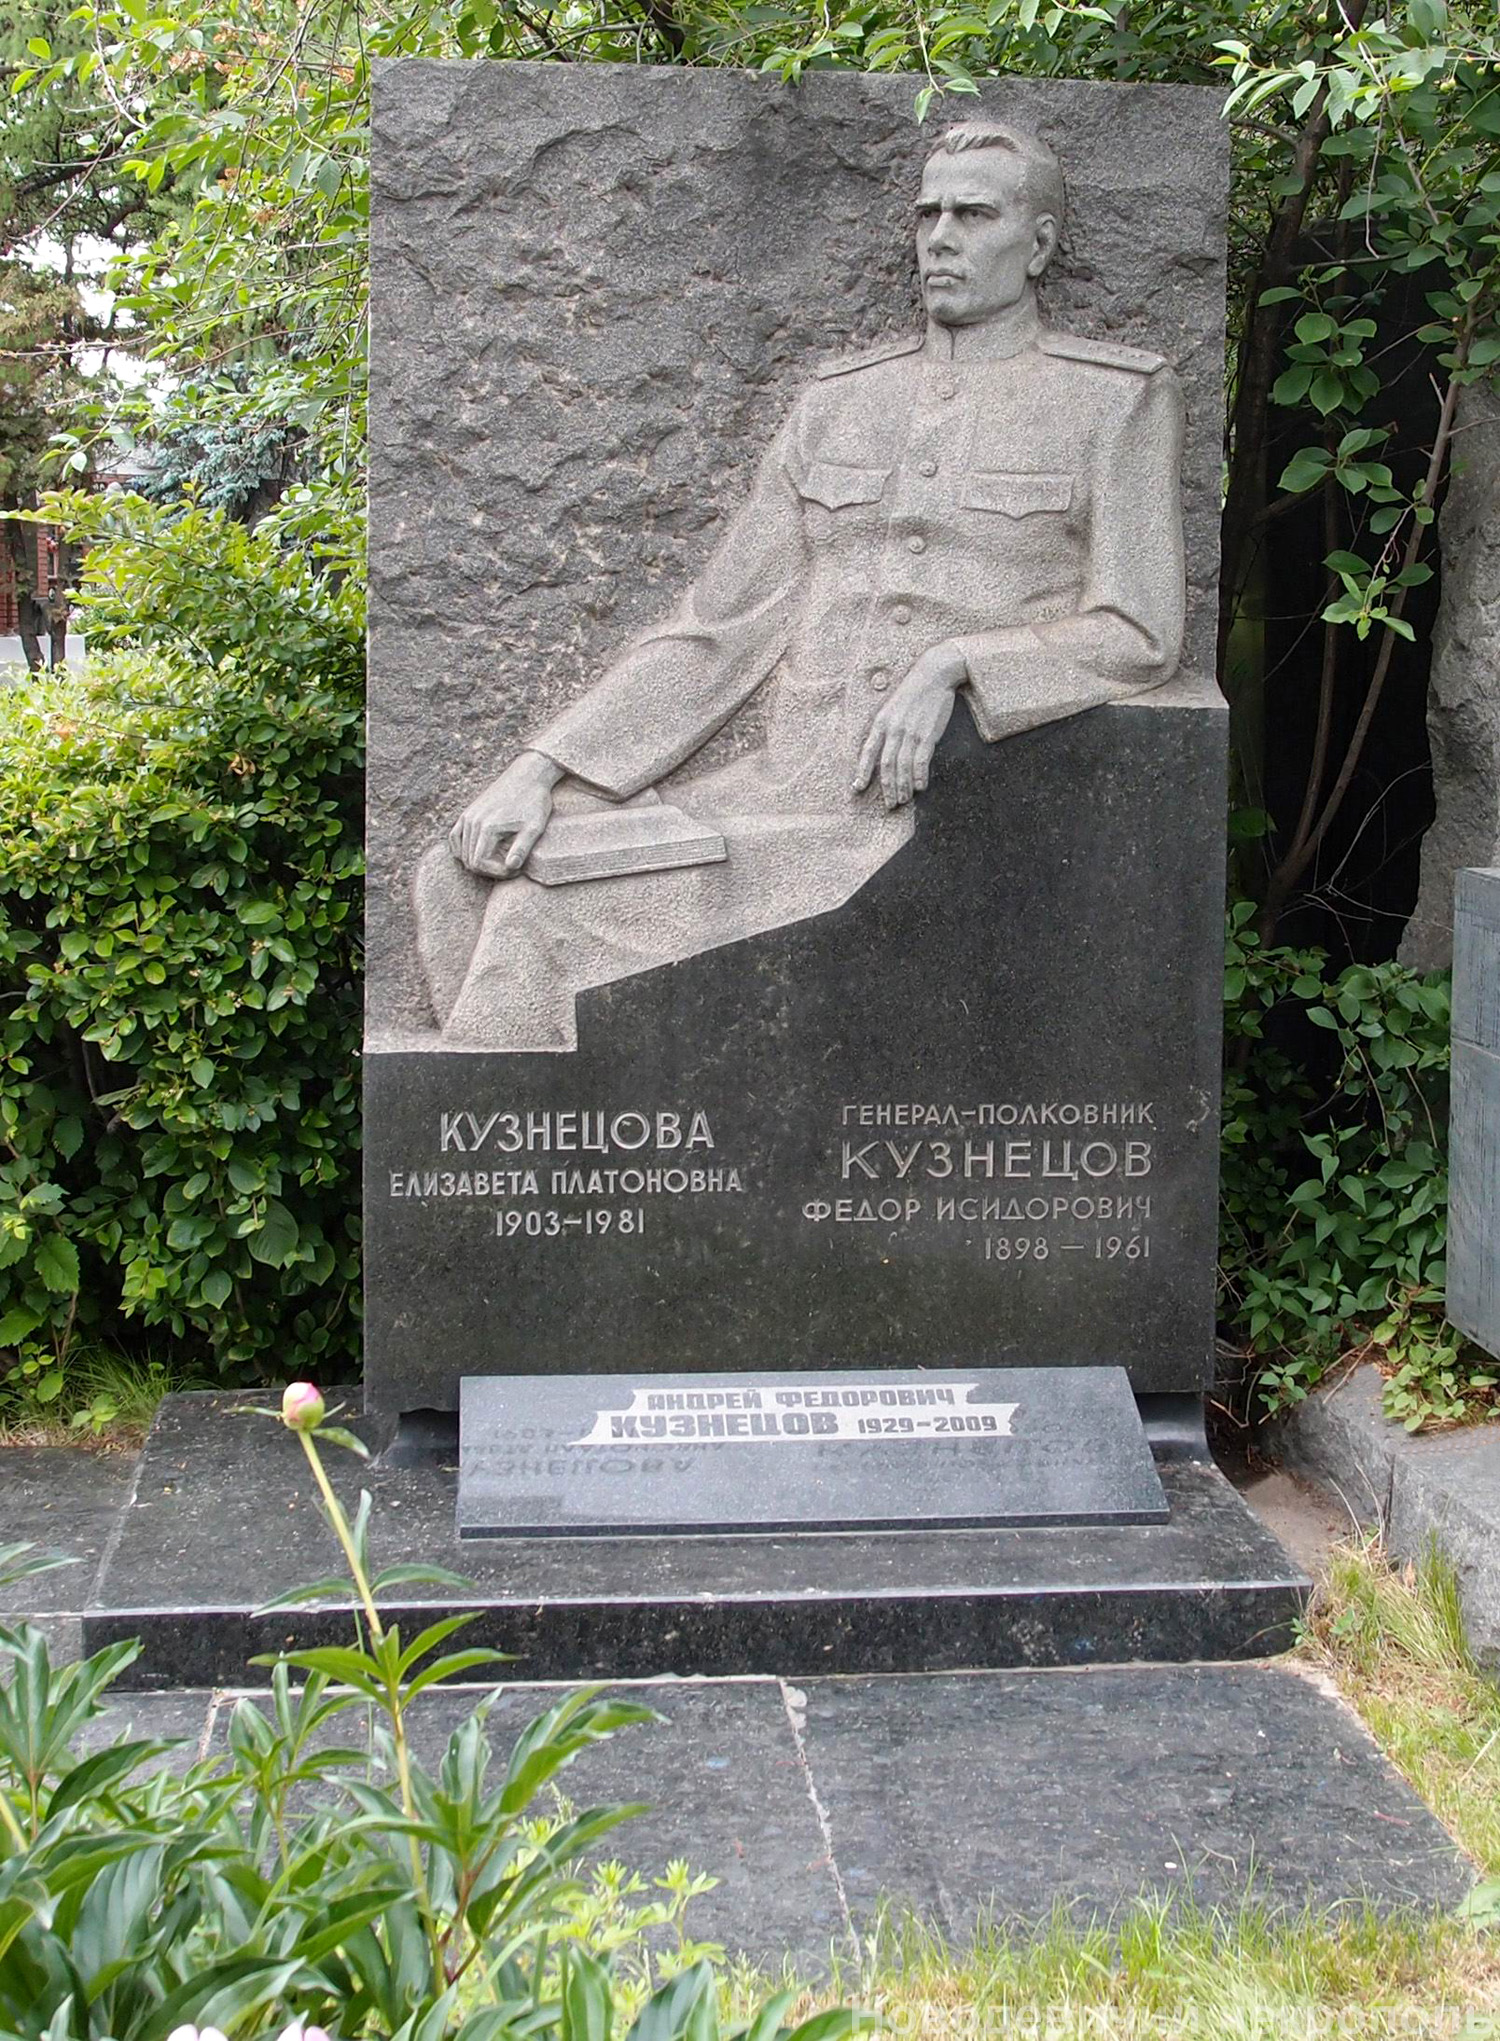 Памятник на могиле Кузнецова Ф.И. (1898-1961), ск. Е.Шуваева, арх. В.Артамонов, на Новодевичьем кладбище (8-10-17).